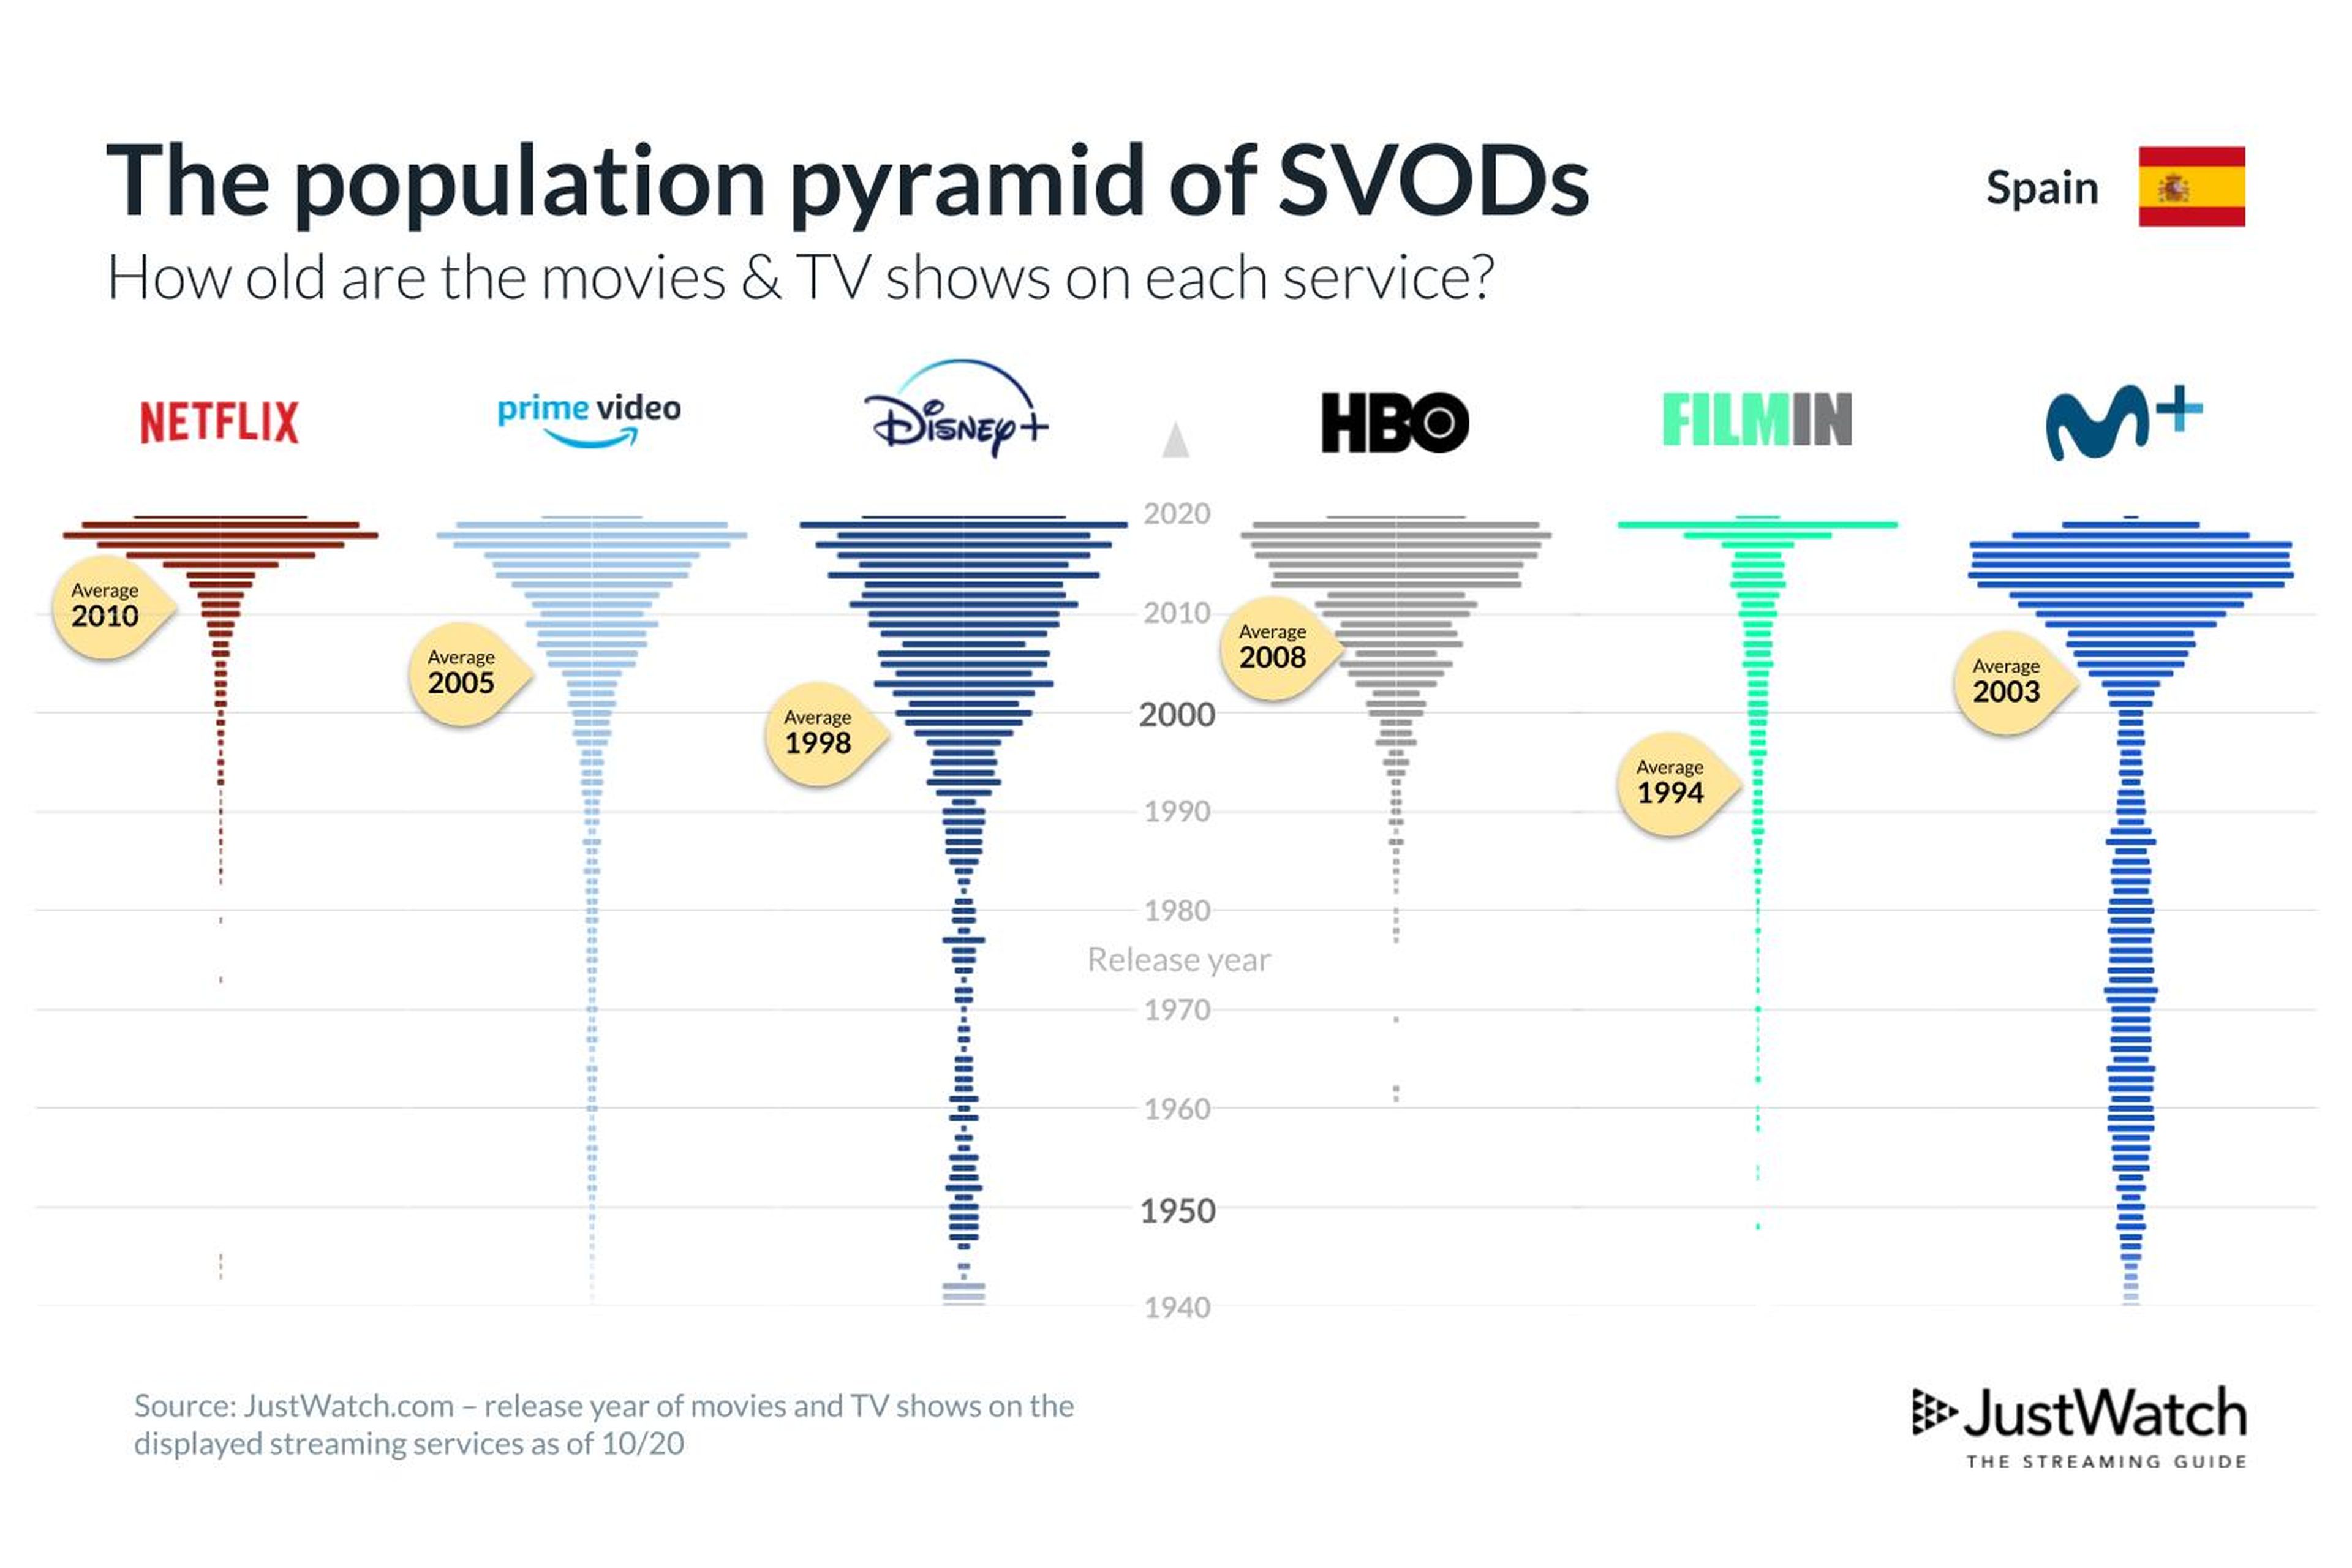 Pirámide de edades de cada una de las principales plataformas de streaming, según la edad media de su contenido.